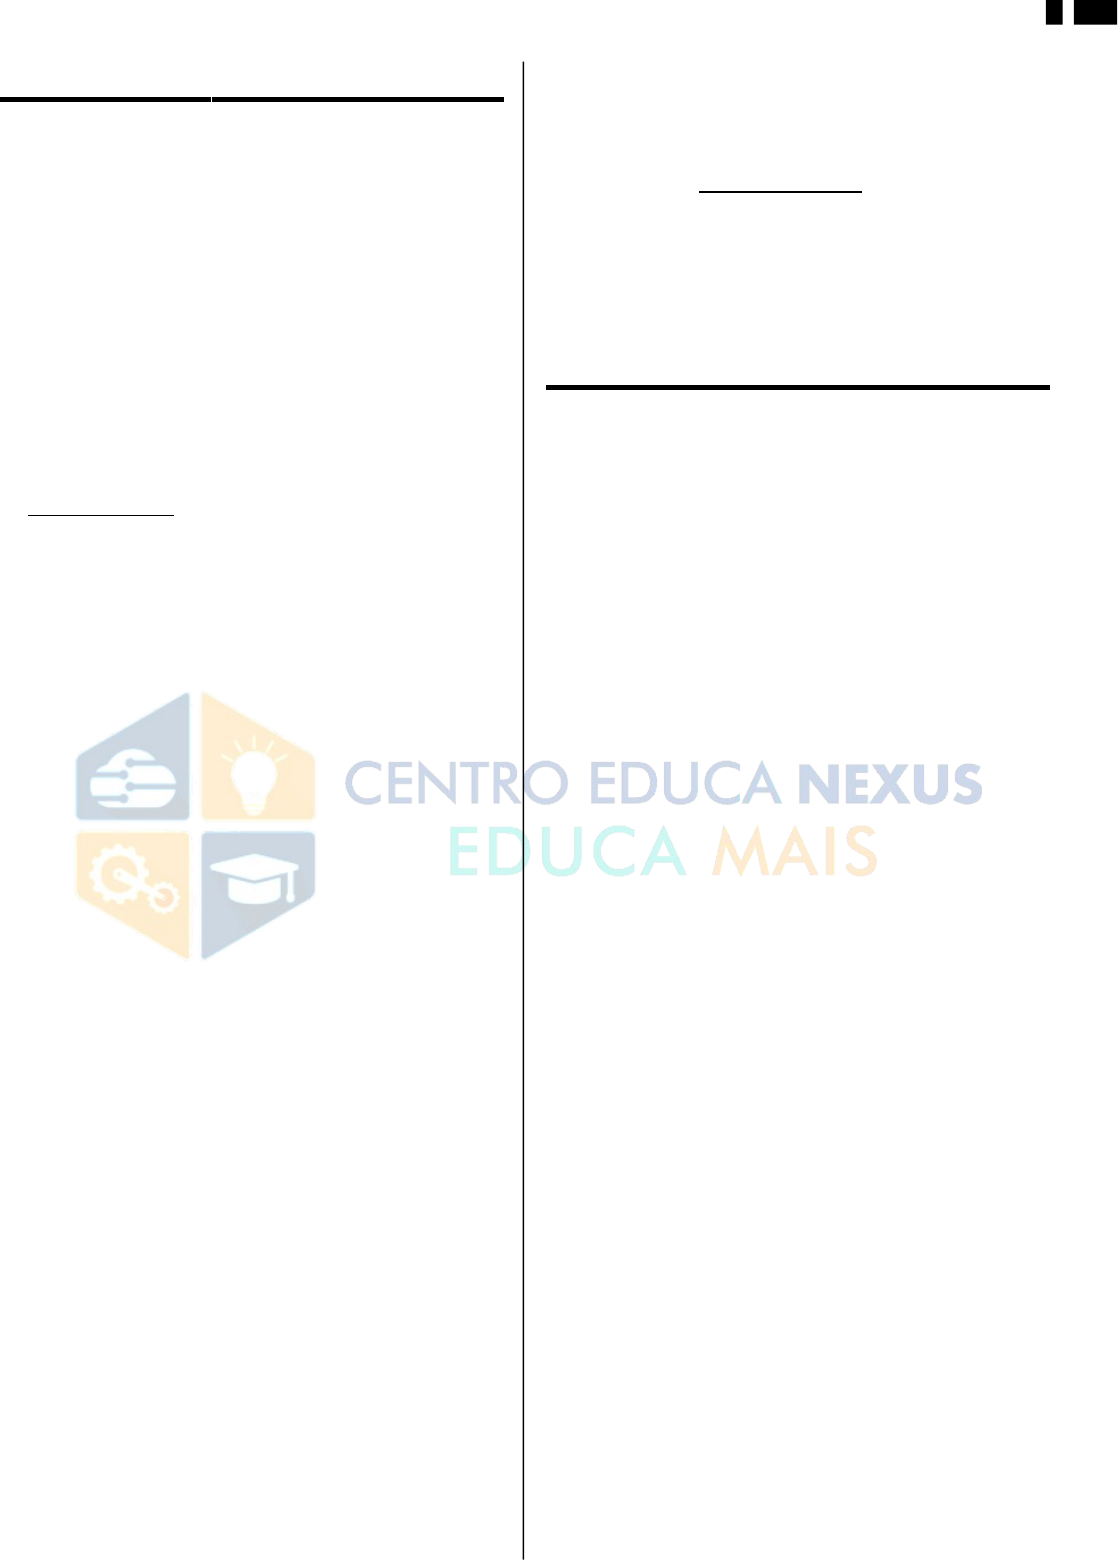 Centro Educa Nexus - Reclame Aqui